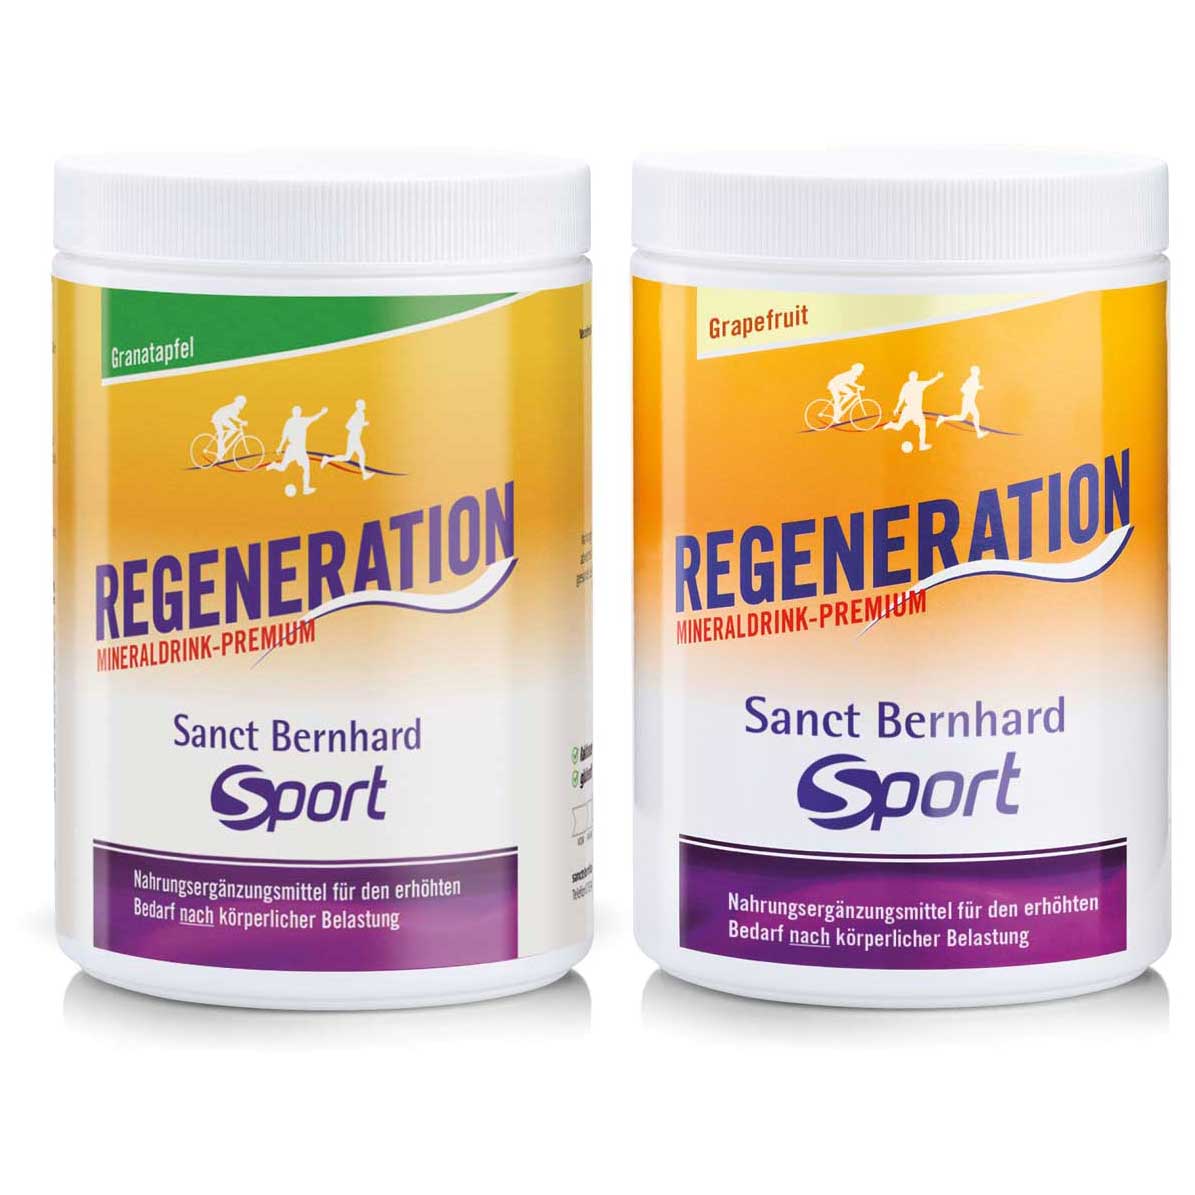 Produktbild von Sanct Bernhard Sport Regeneration Mineraldrink-Premium - 750g